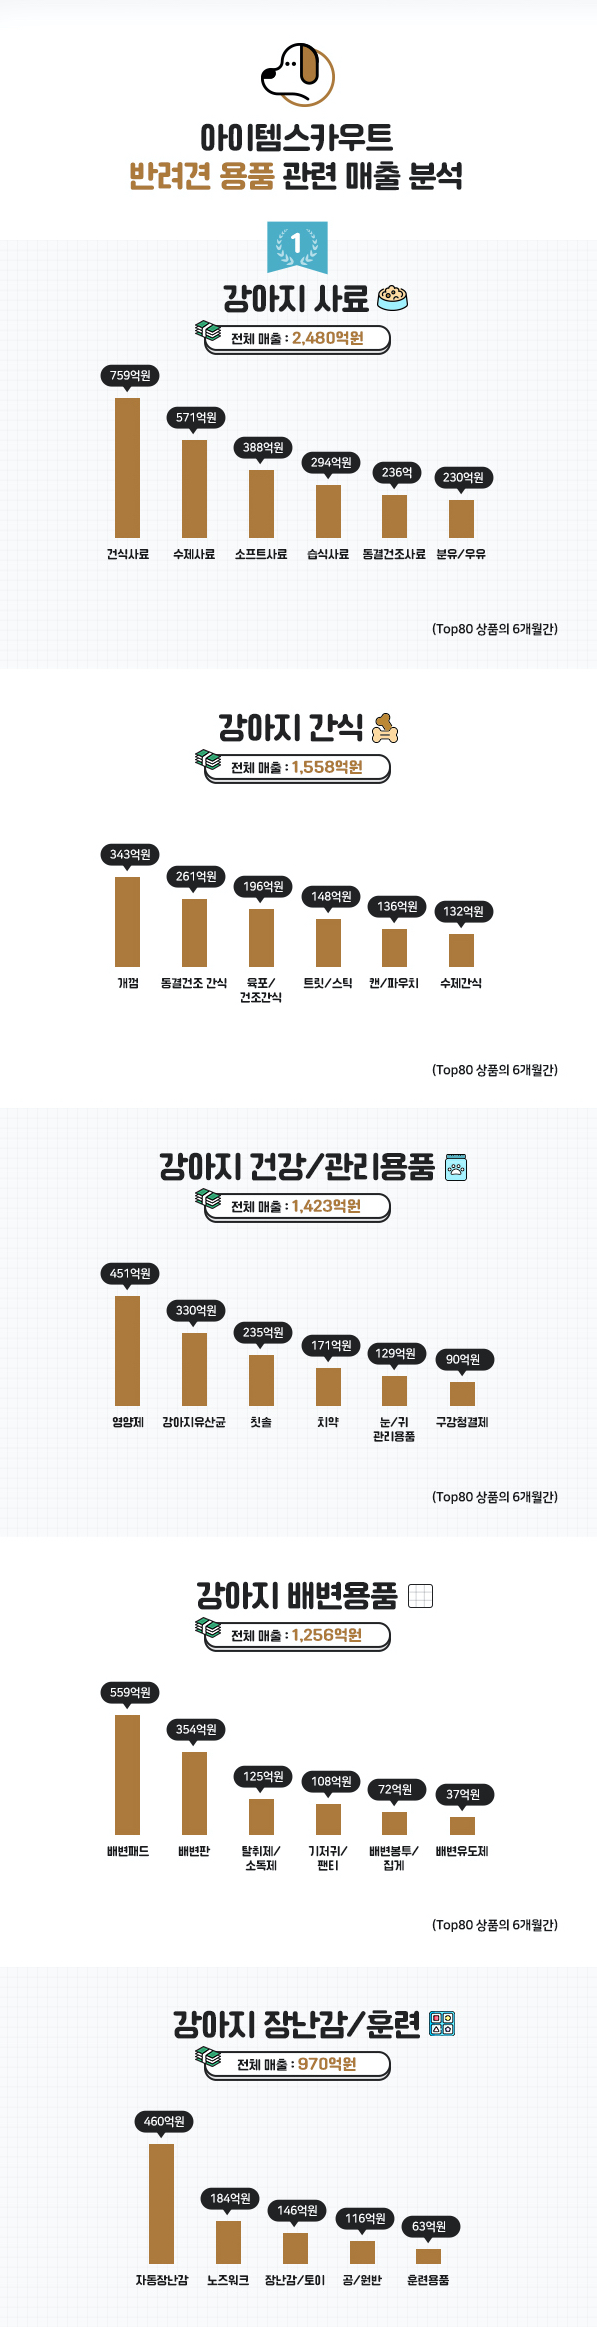 宠物狗用品销售额猛增，半年内达7680亿韩元...安全座椅也剧增 新闻快讯 第2张